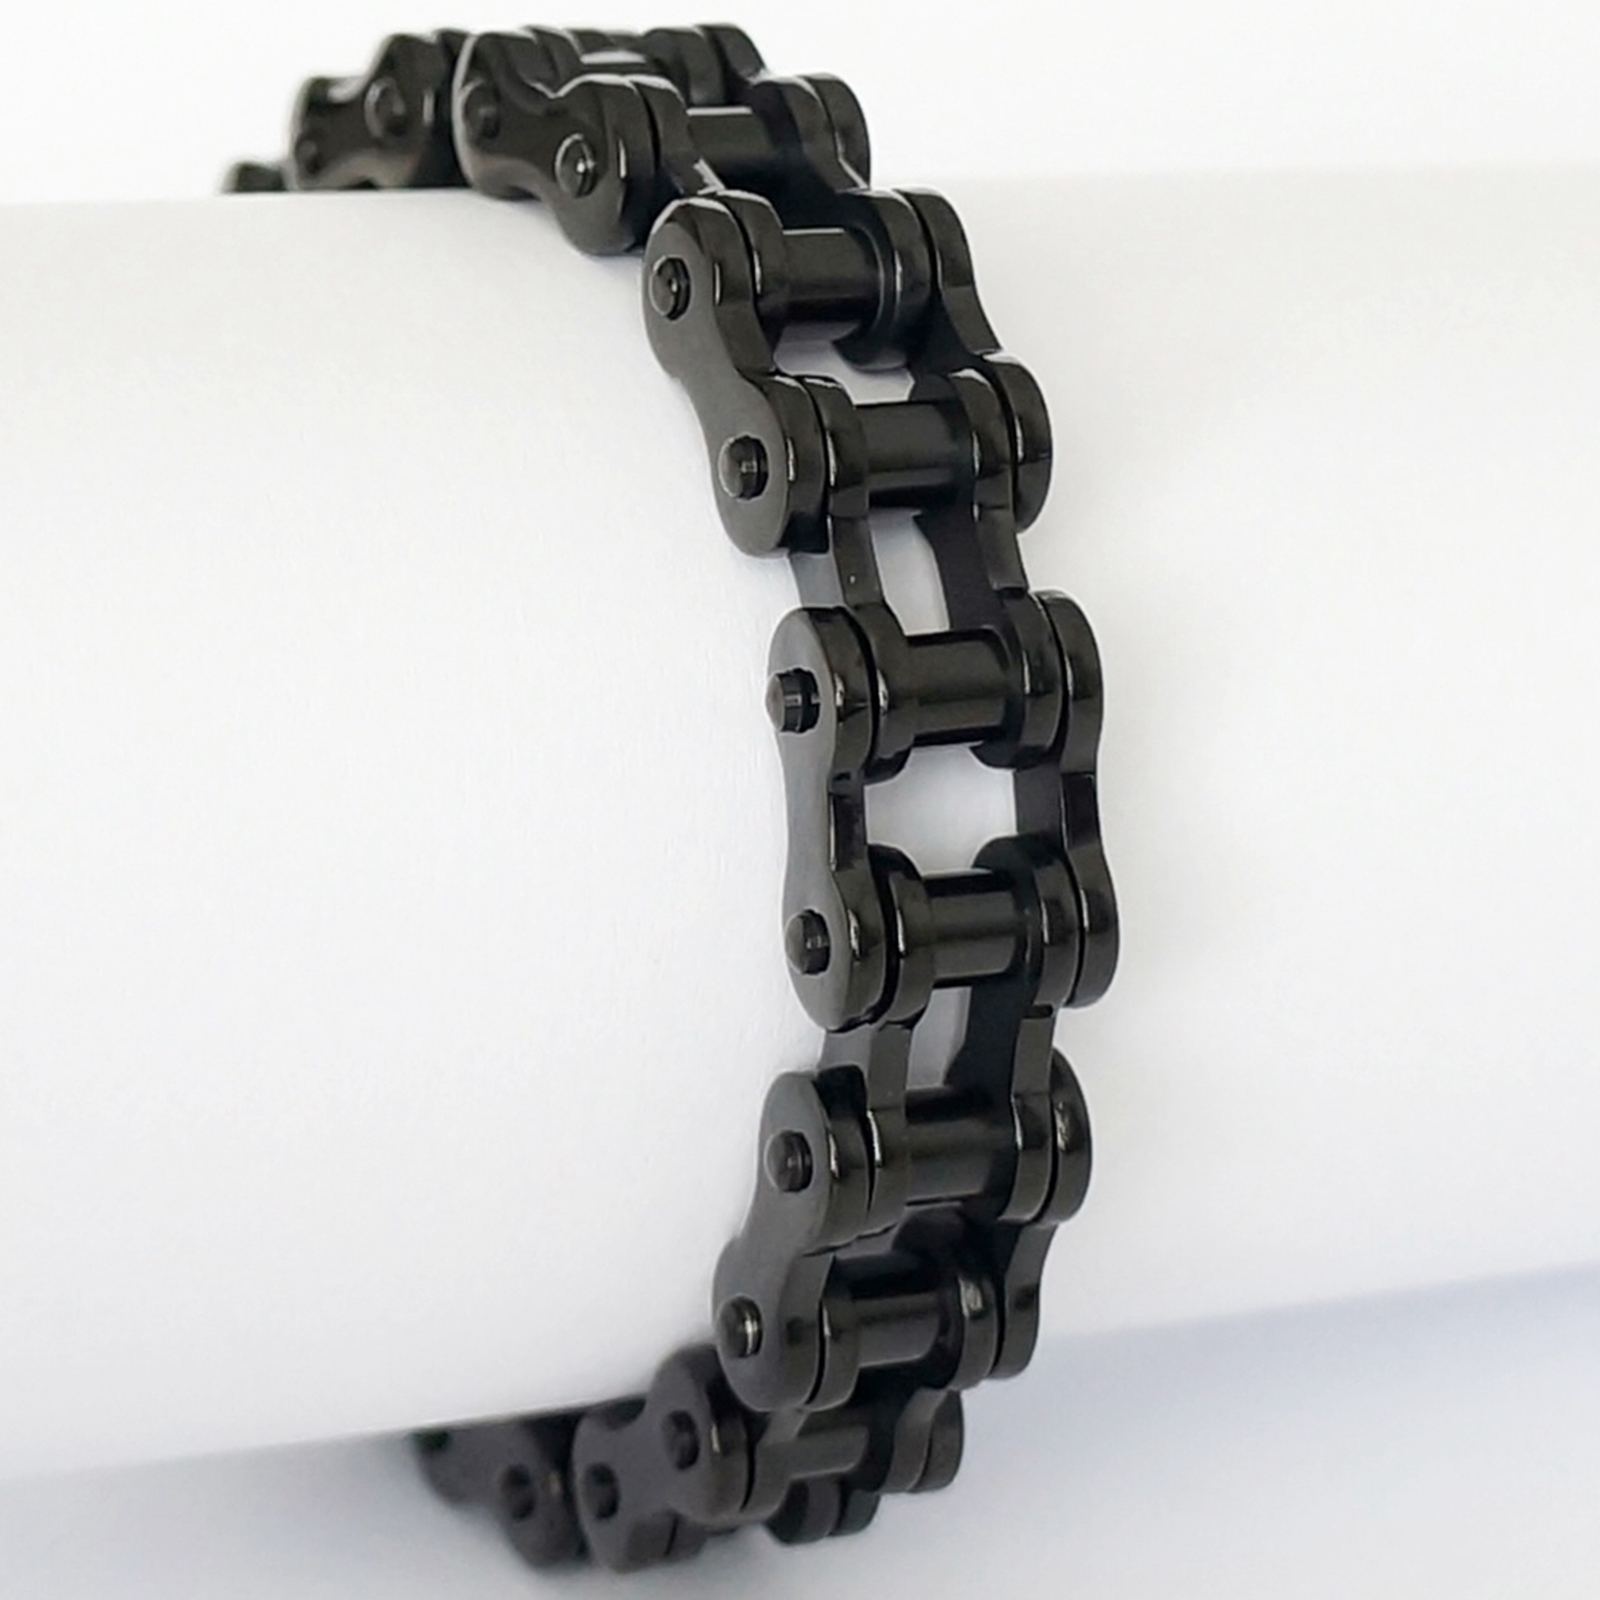 Armband aus Edelstahl - FAHRRADKETTE - schwarz glänzend 1,3cm